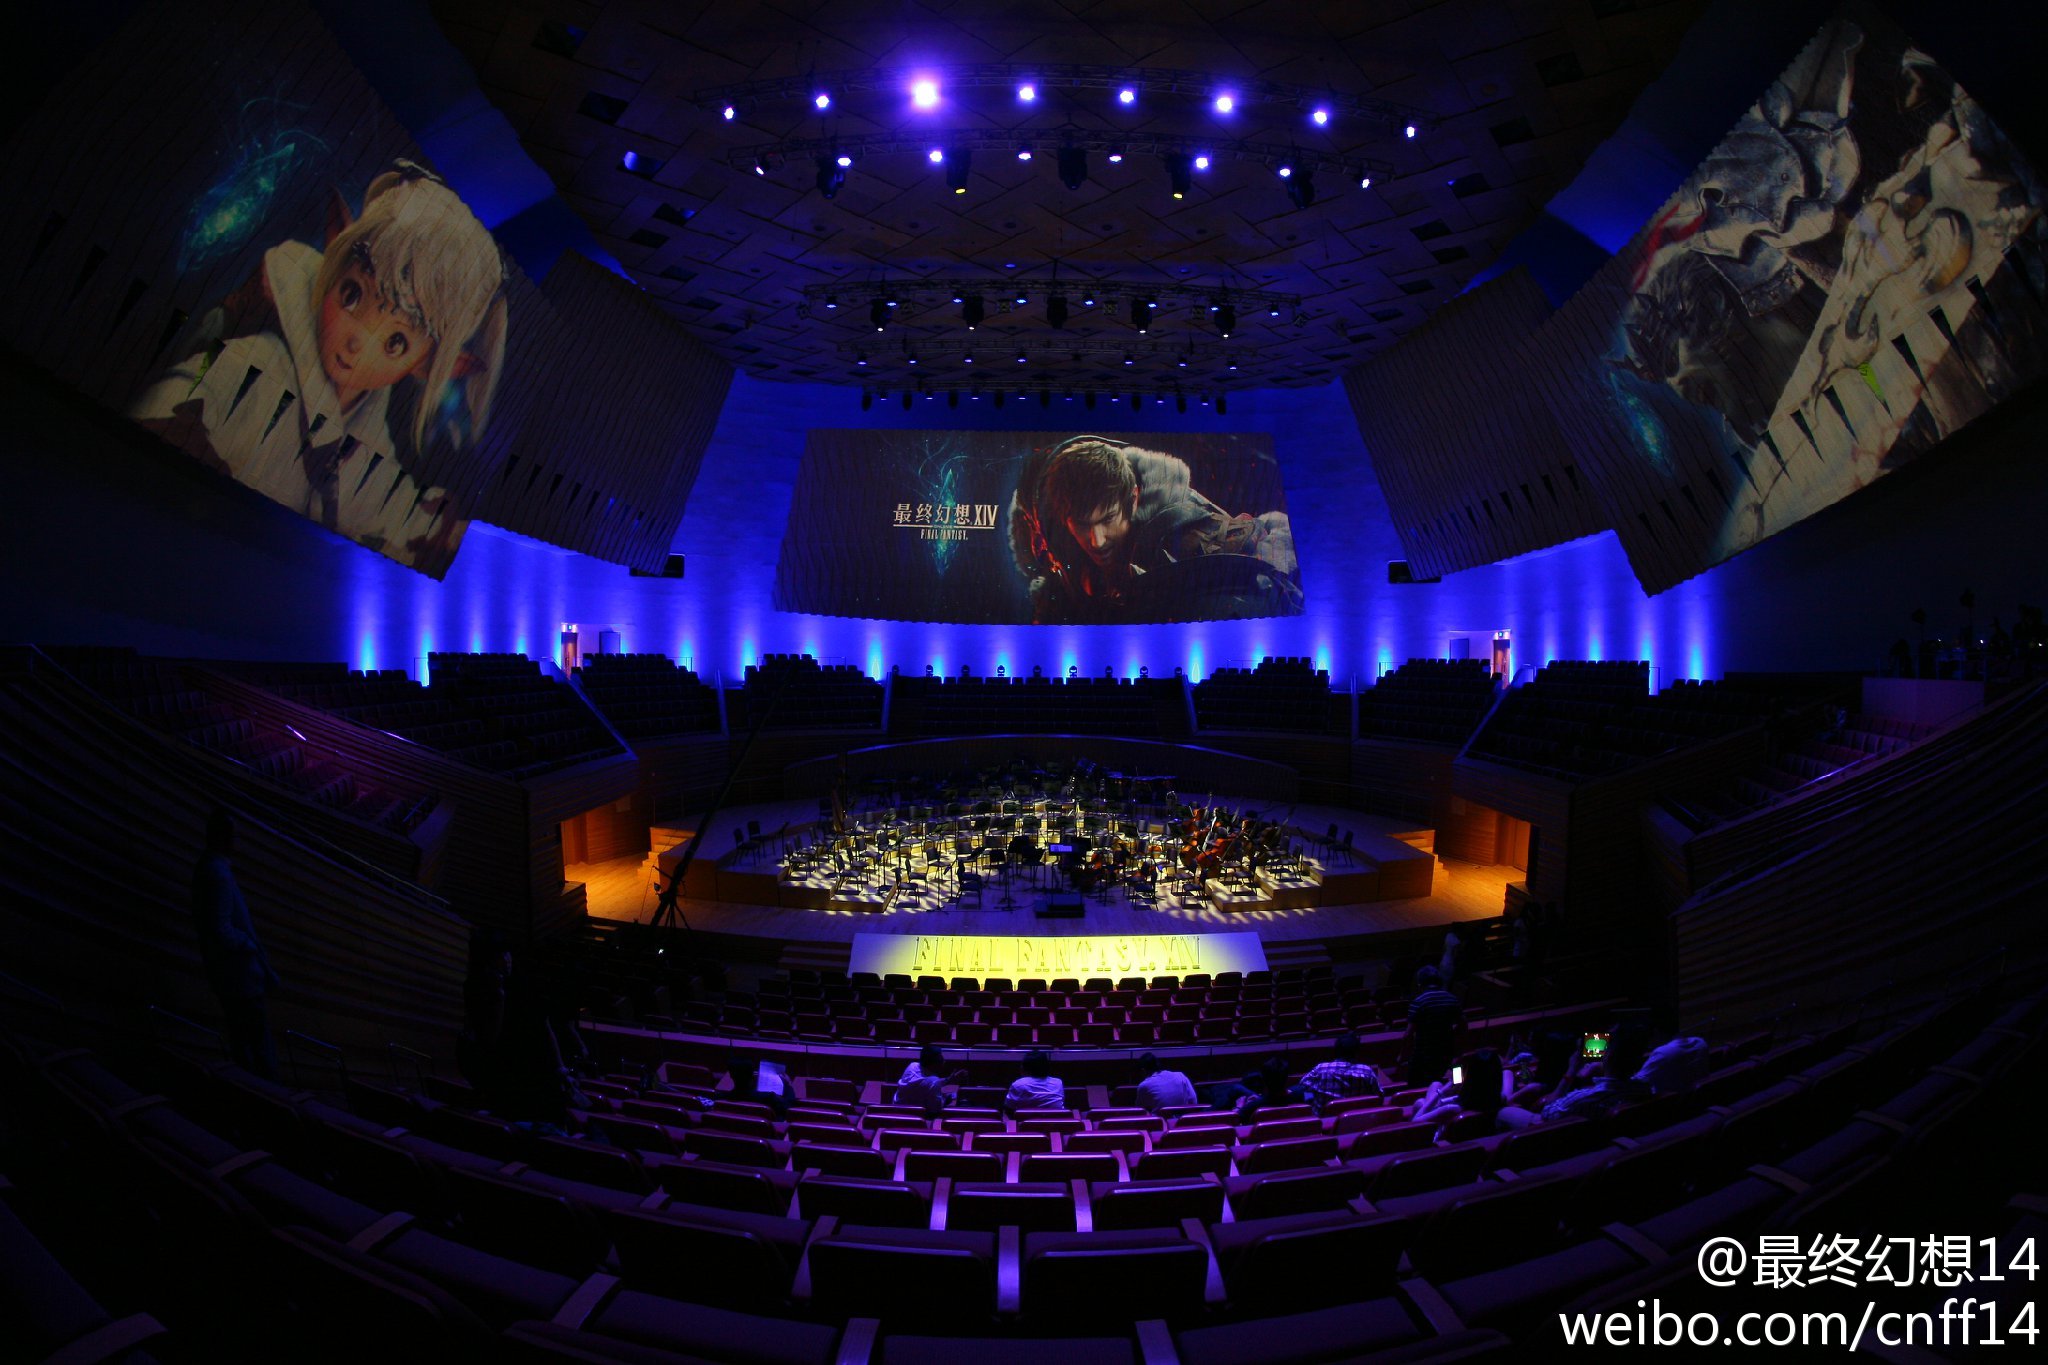 《最终幻想14》交响音乐会通过许可 将于3月在上海举行